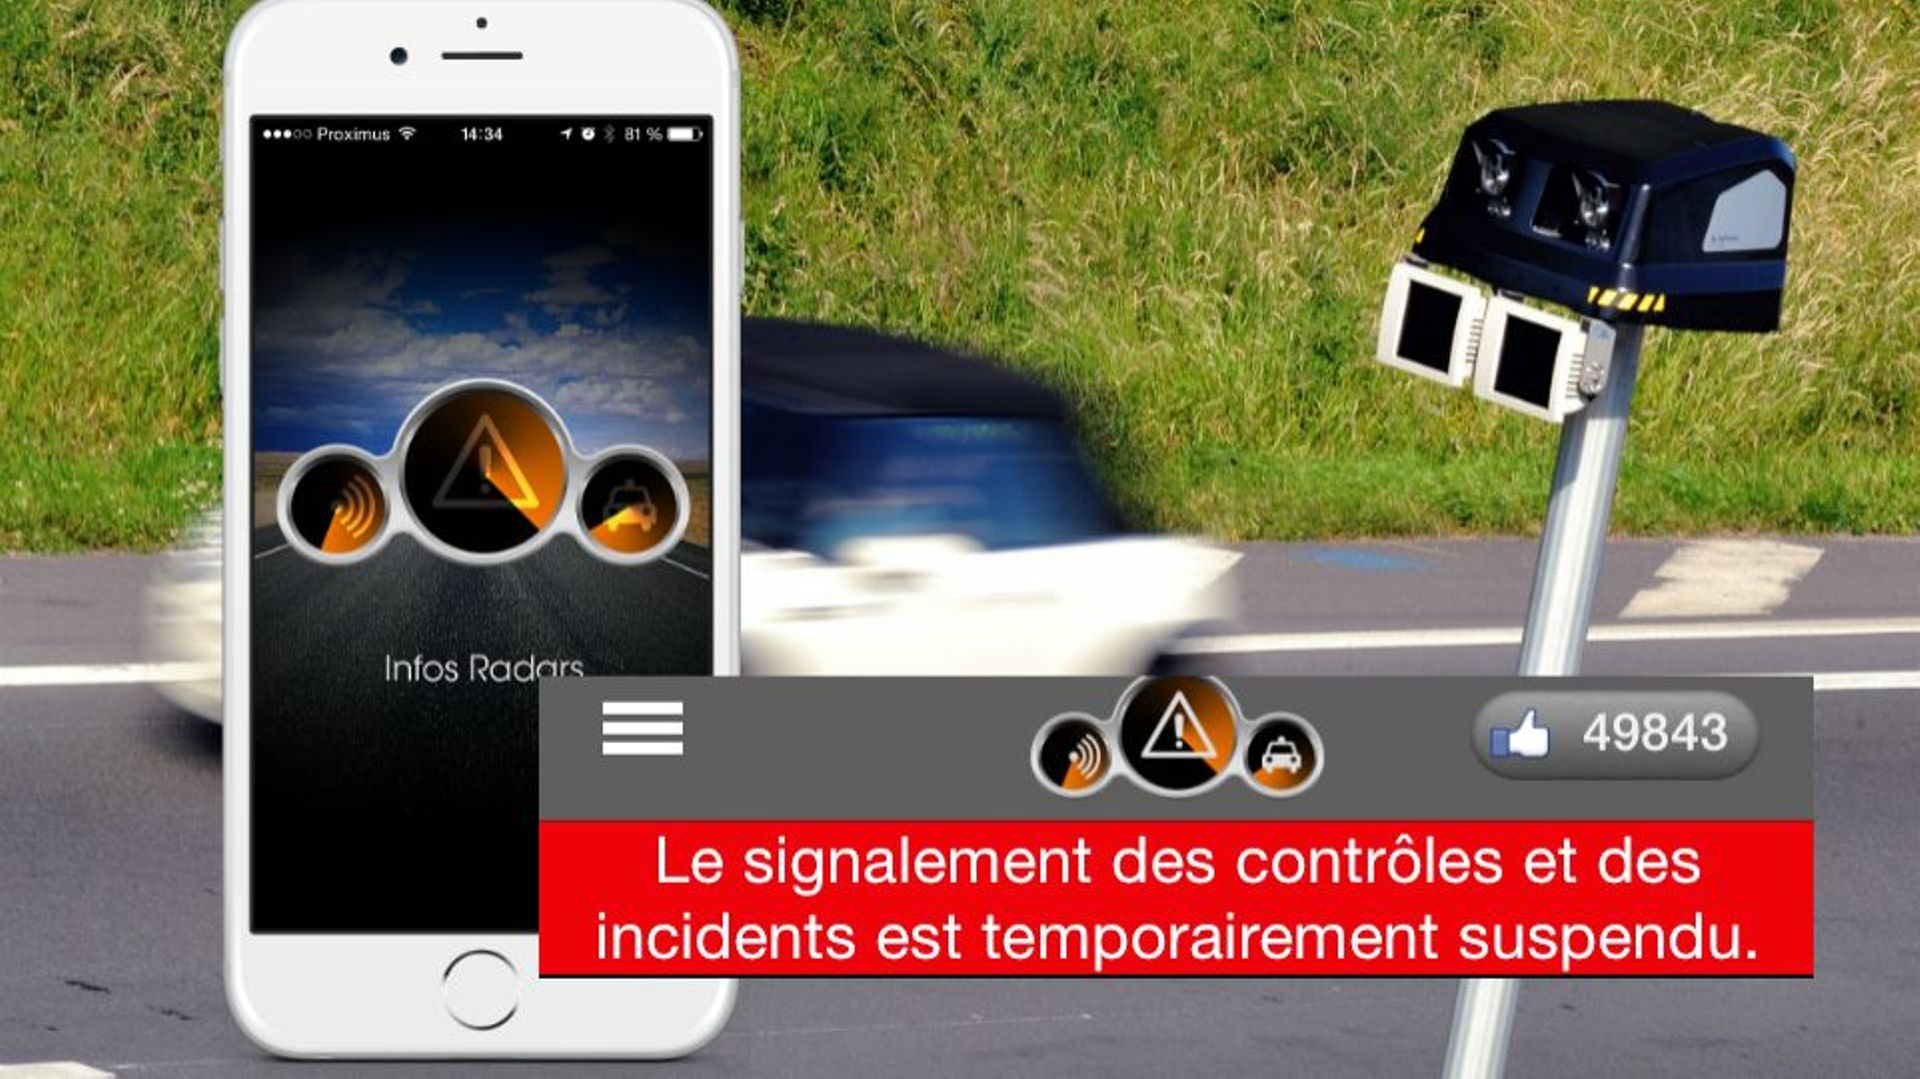 Habituellement, cette application pour smartphone informe les automobilistes d'éventuels incidents, de la présence de radars ou bien de contrôles de police.